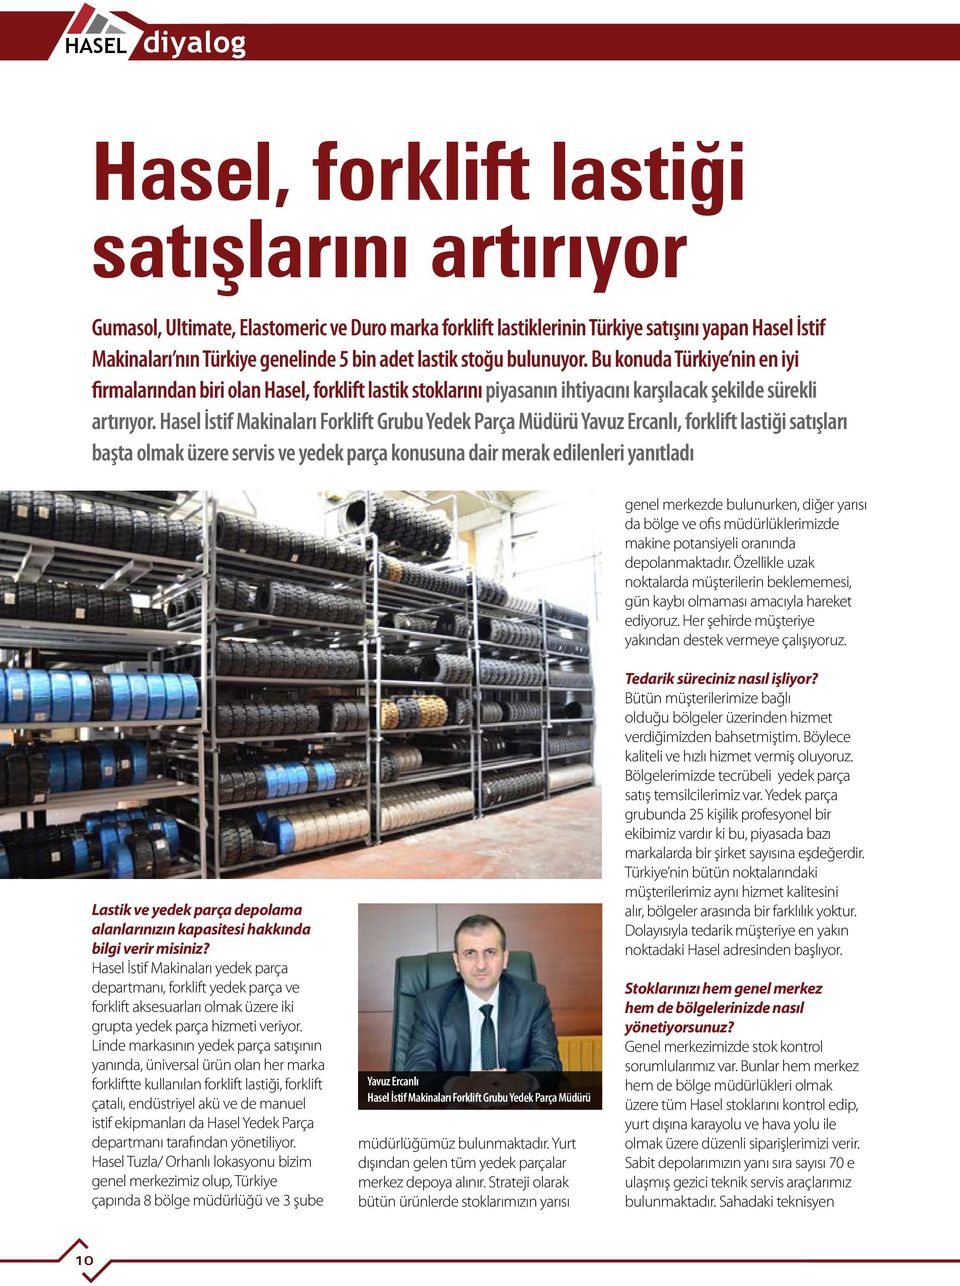 Hasel İstif Makinaları Forklift Grubu Yedek Parça Müdürü Yavuz Ercanlı, forklift lastiği satışları başta olmak üzere servis ve yedek parça konusuna dair merak edilenleri yanıtladı genel merkezde